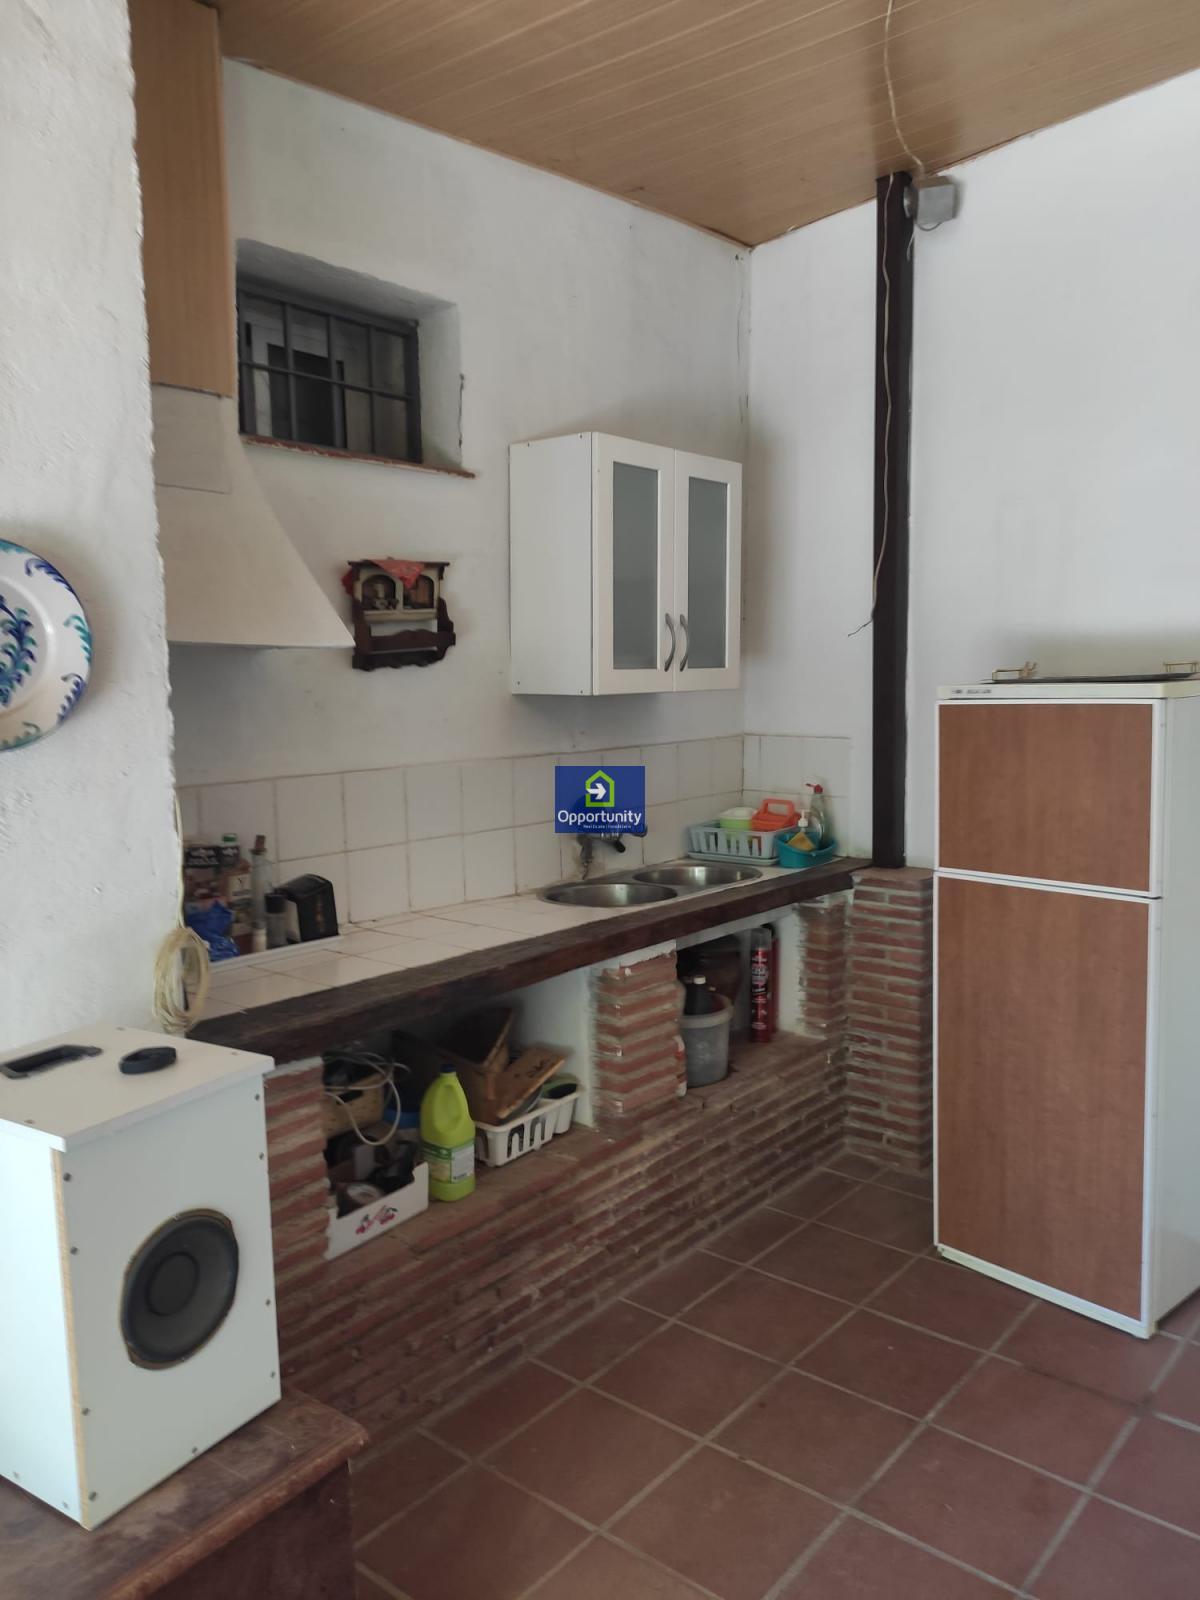 Hus uthyres i Cerrillo de Maracena (Granada), 750€/månad (Säsong)